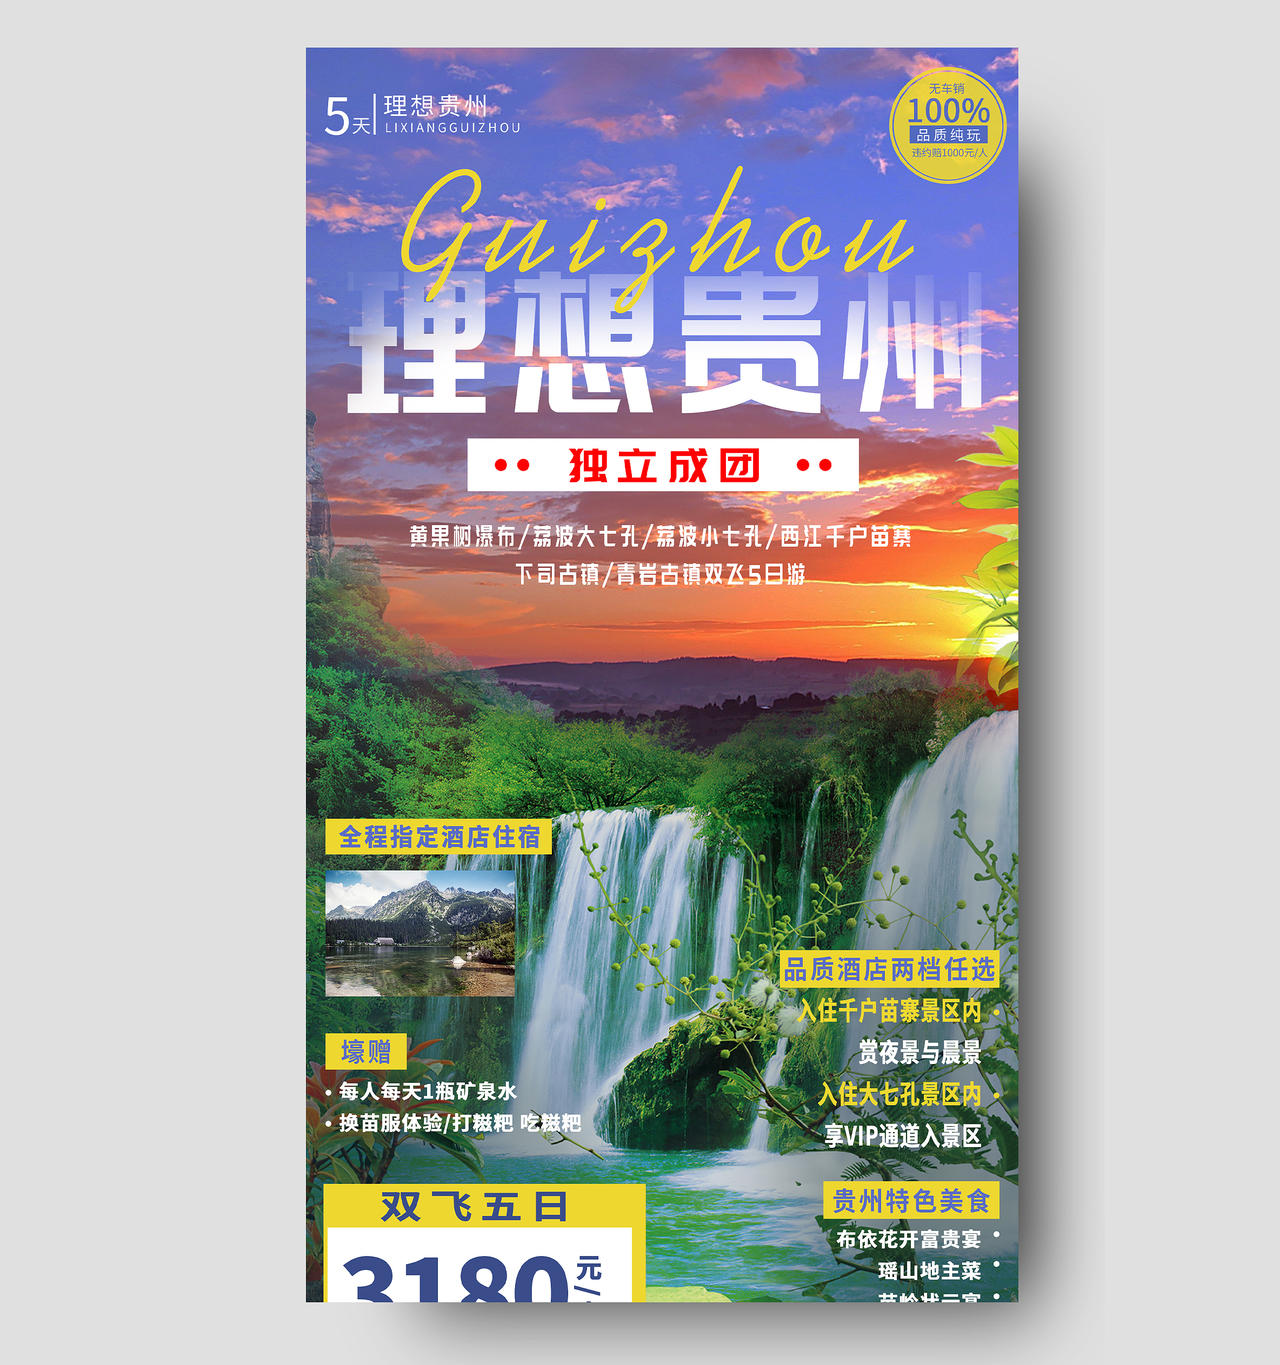 紫色意境理想贵州旅游旅行促销活动UI海报